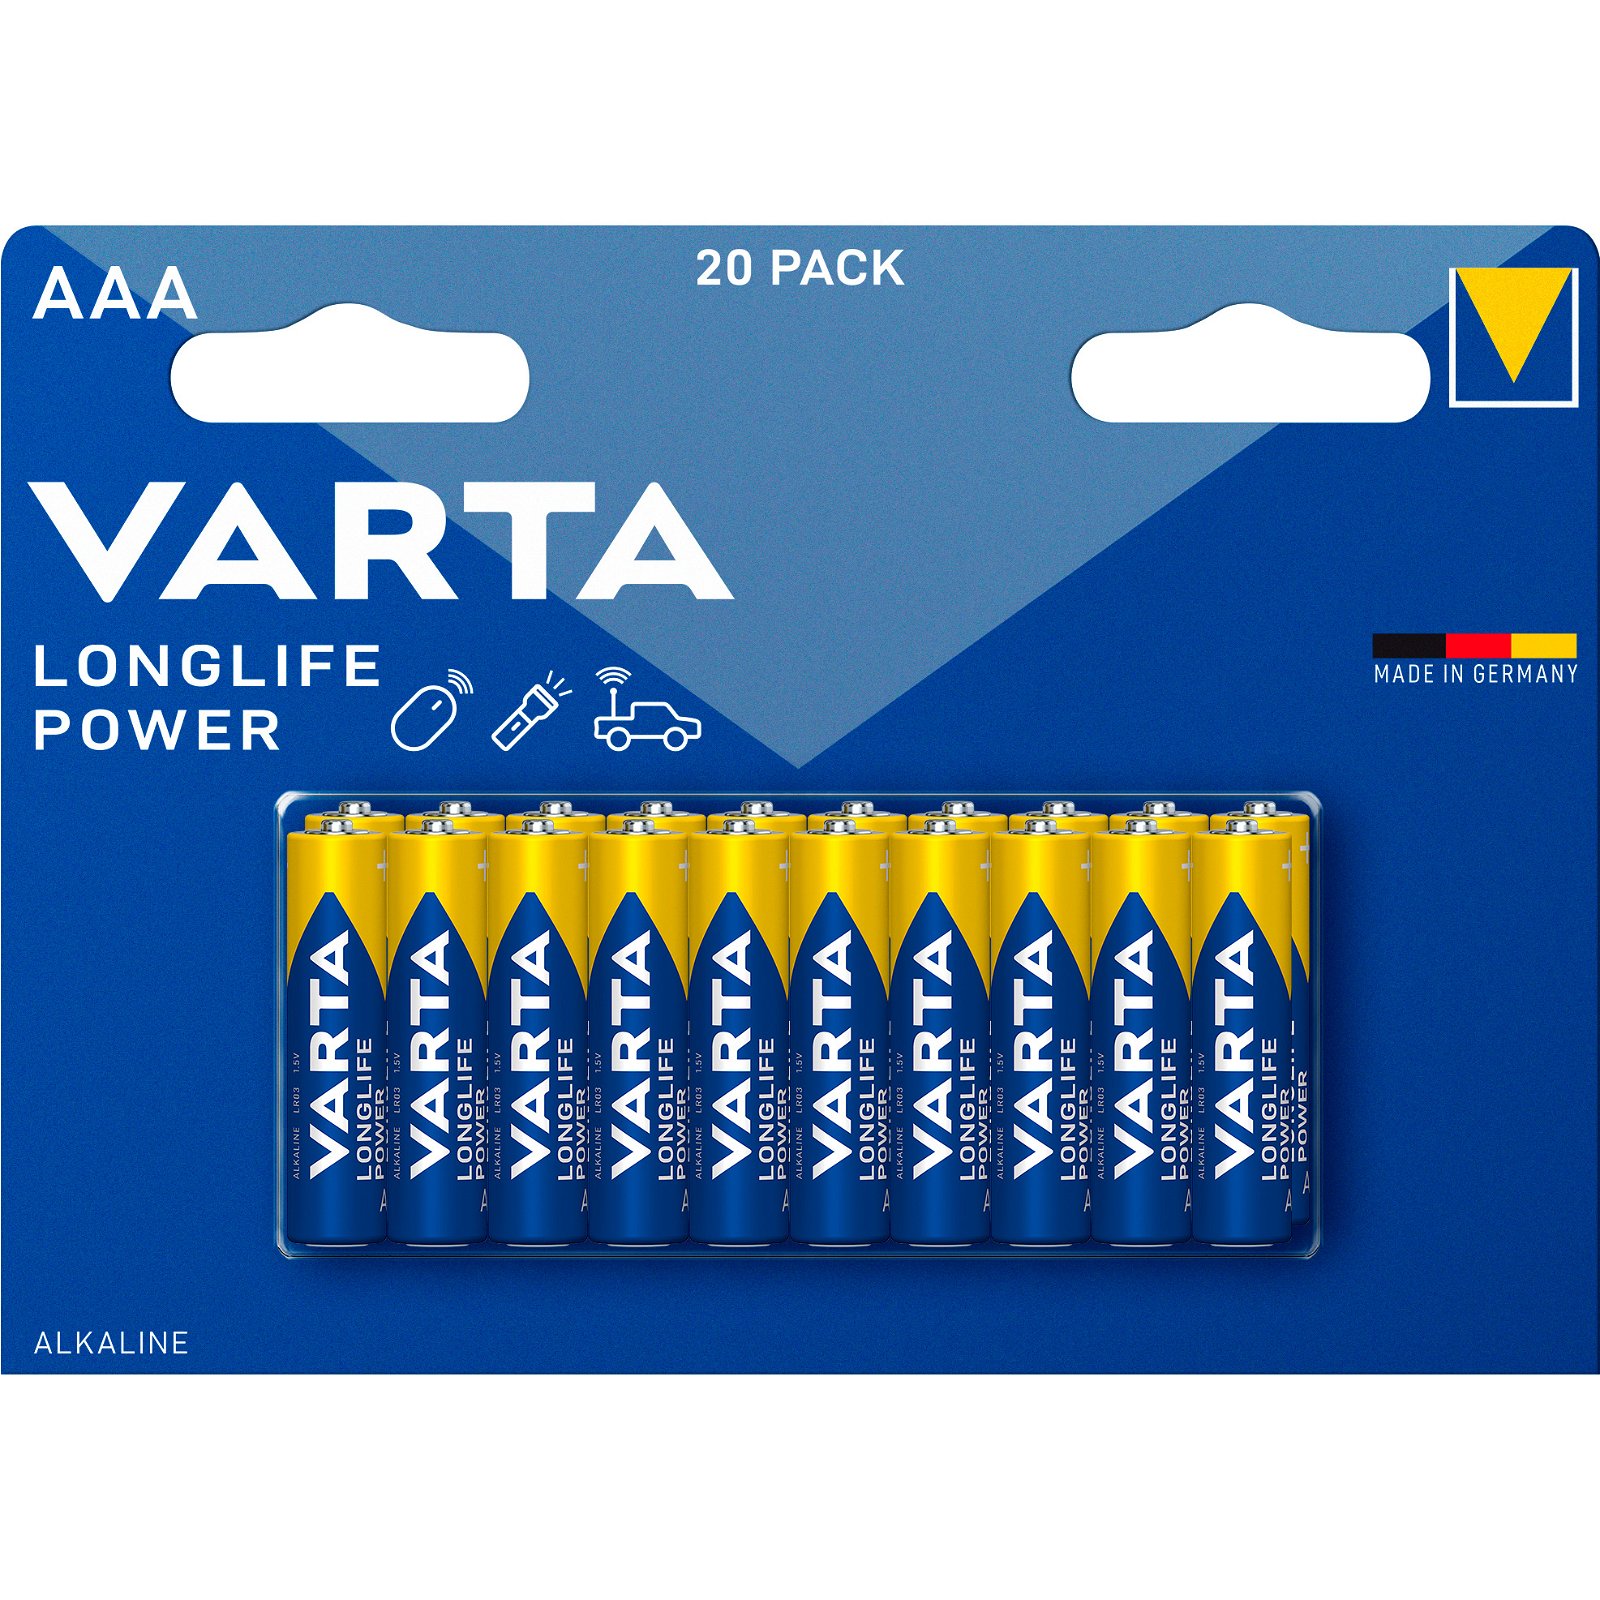 VARTA LongLife Power batteri AAA/LR03 1.5 v 20 stk